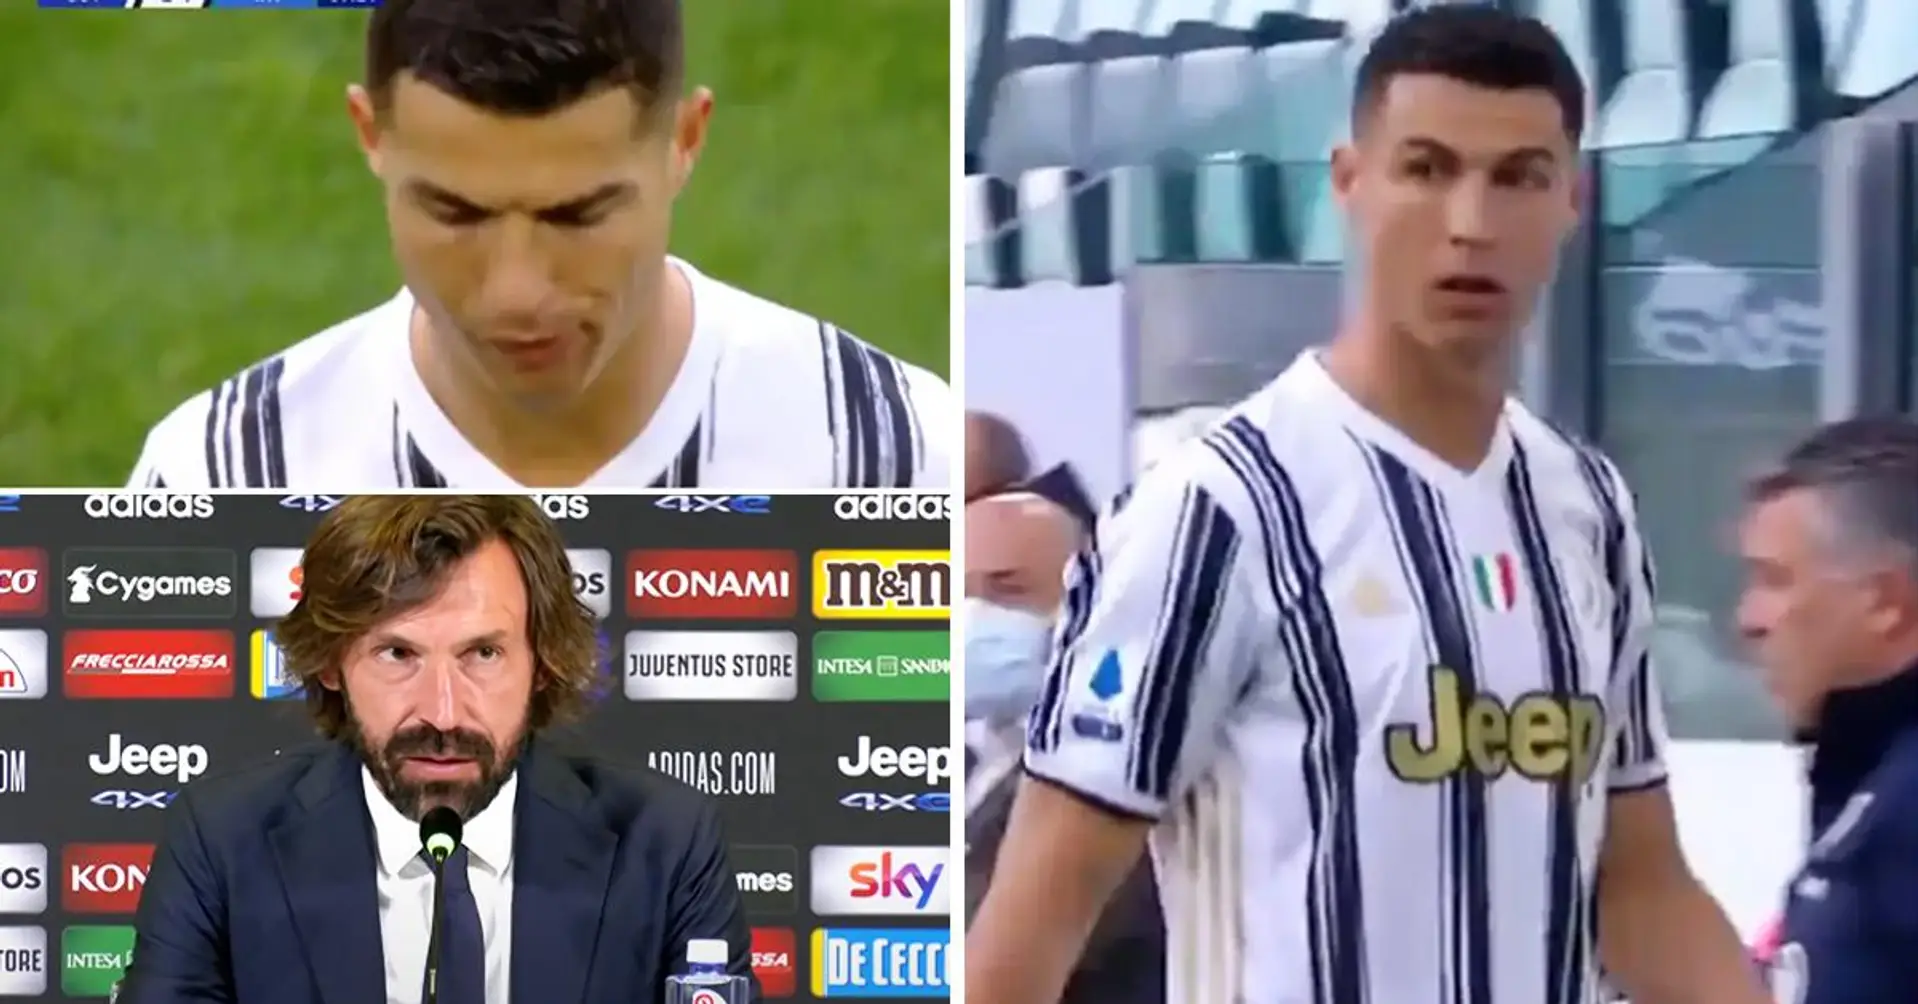 Andrea Pirlo verrät, wie Cristiano Ronaldo auf seine Auswechslung im entscheidenden Serie-A-Spiel reagierte